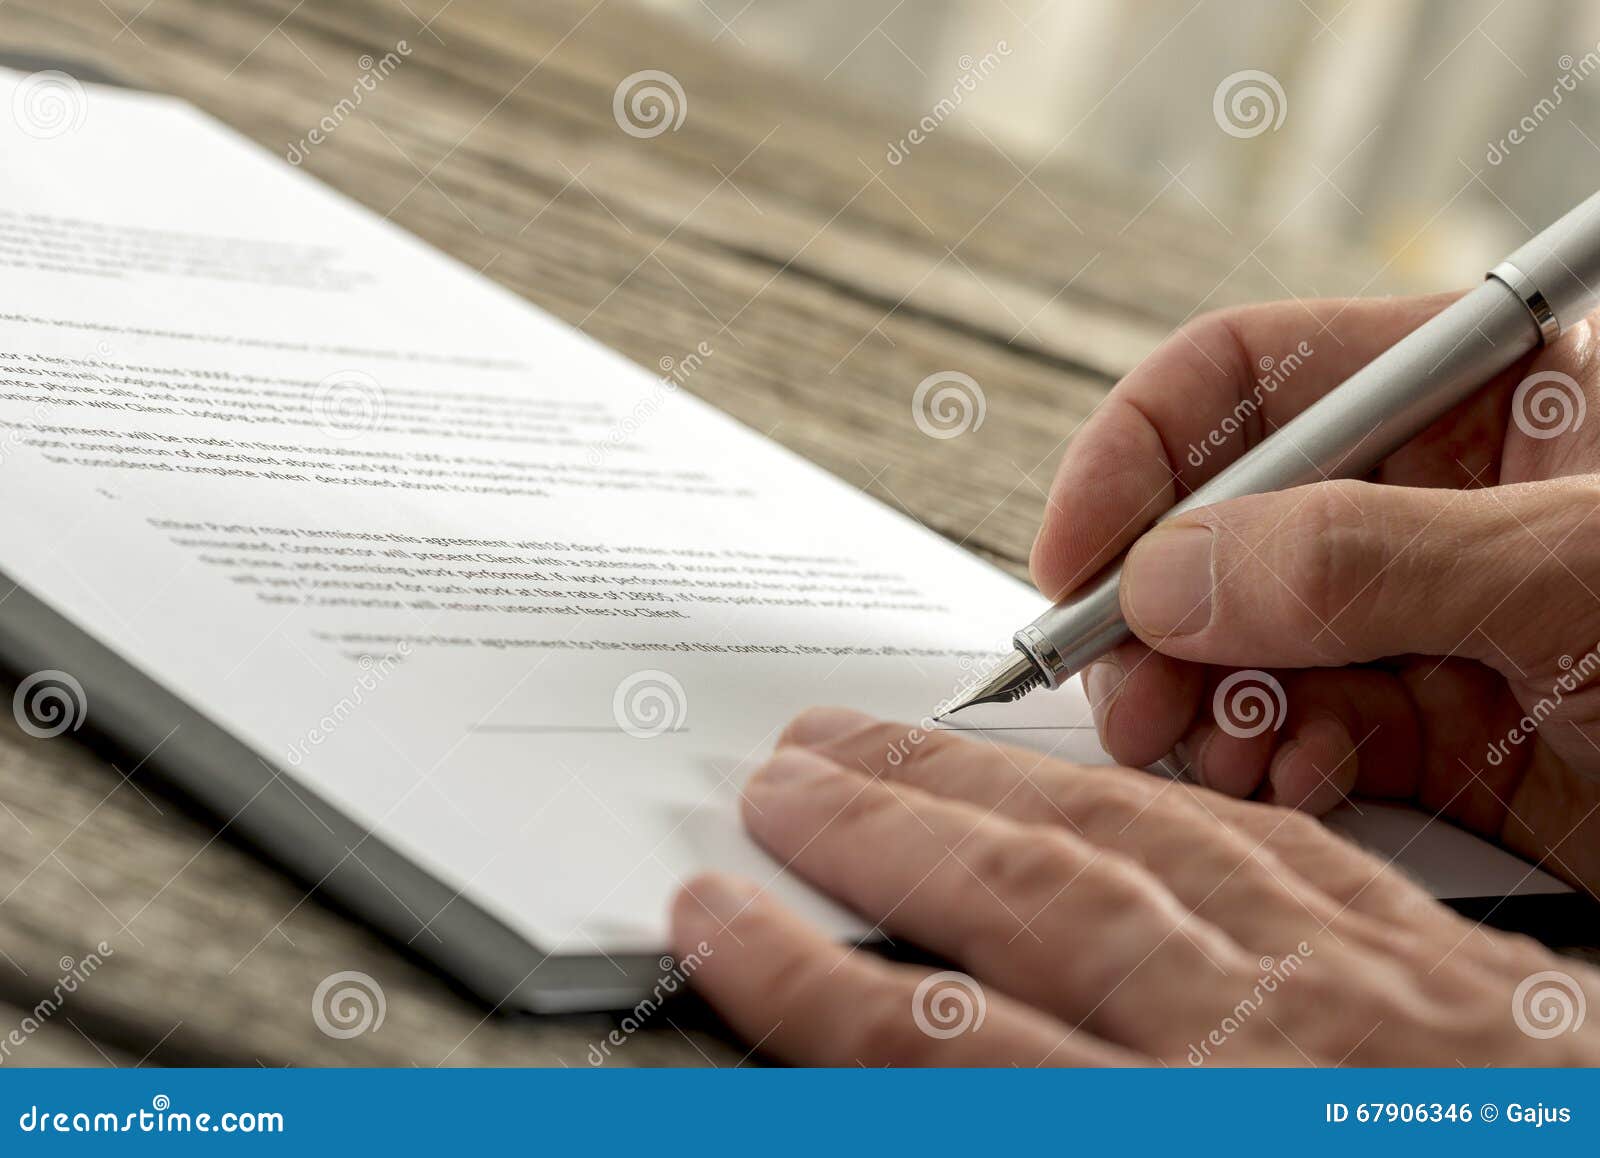 Zbliżenie podpisuje podaniową formę lub kontrakt męska ręka. Zbliżenie podpisuje kontraktacyjną lub podaniową formę z fontanny piórem na textured drewnianym biurku męska ręka